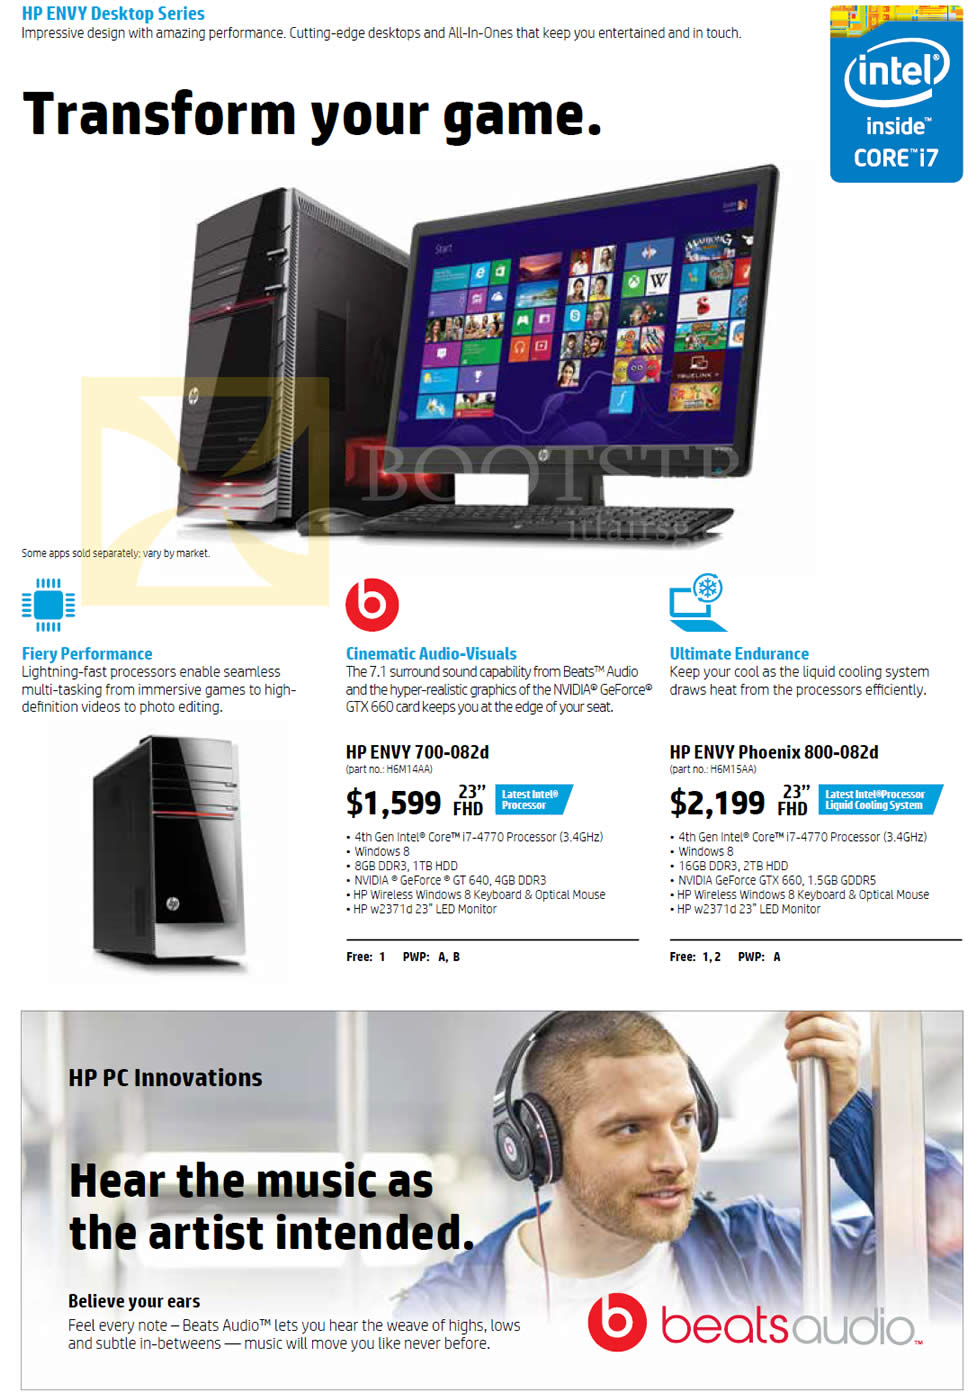 COMEX 2013 price list image brochure of HP Desktop PCs Envy 700-082d, Envy Phoenix 800-082d